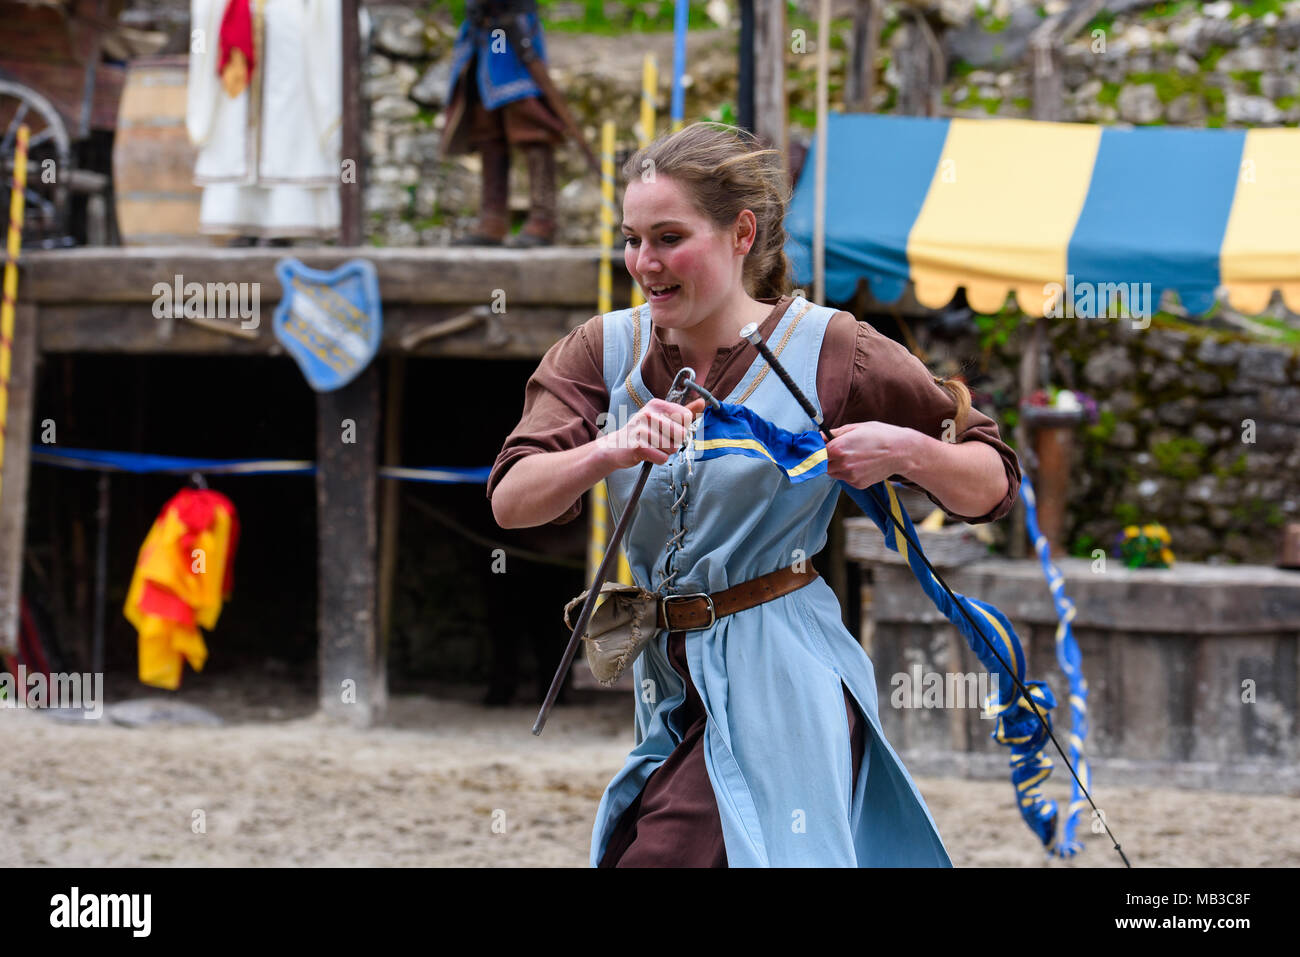 PROVINS, Frankreich - 31. MÄRZ 2018: Unbekannter Mädchen rennt die Ritter im Mittelalter in der Rekonstruktion der Legende von den Rittern zu erfüllen Stockfoto